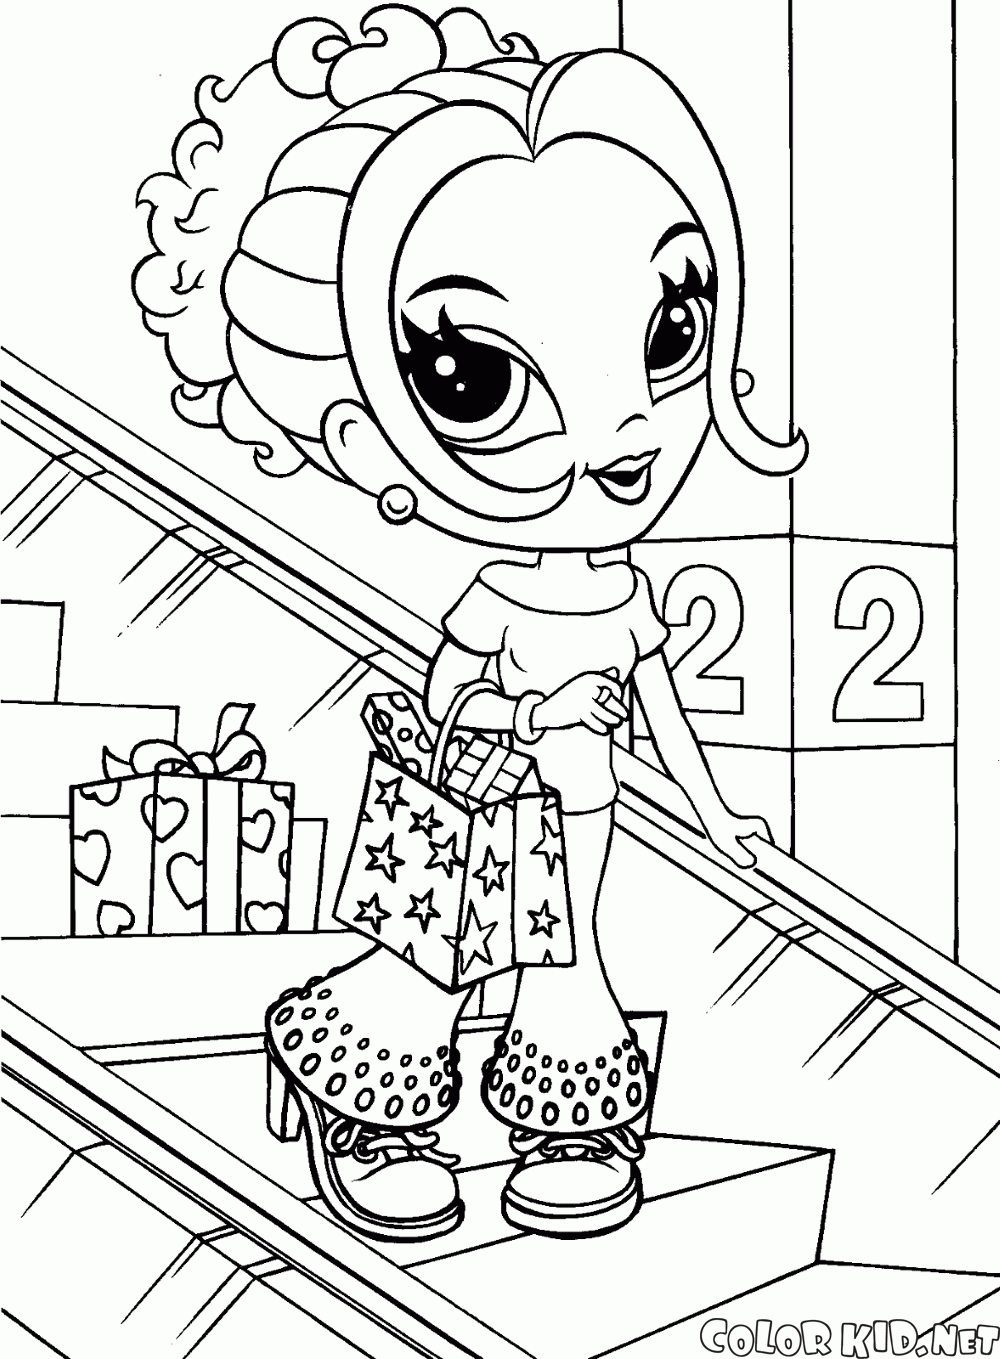 Dibujo para colorear - La niña en una tienda de ropa